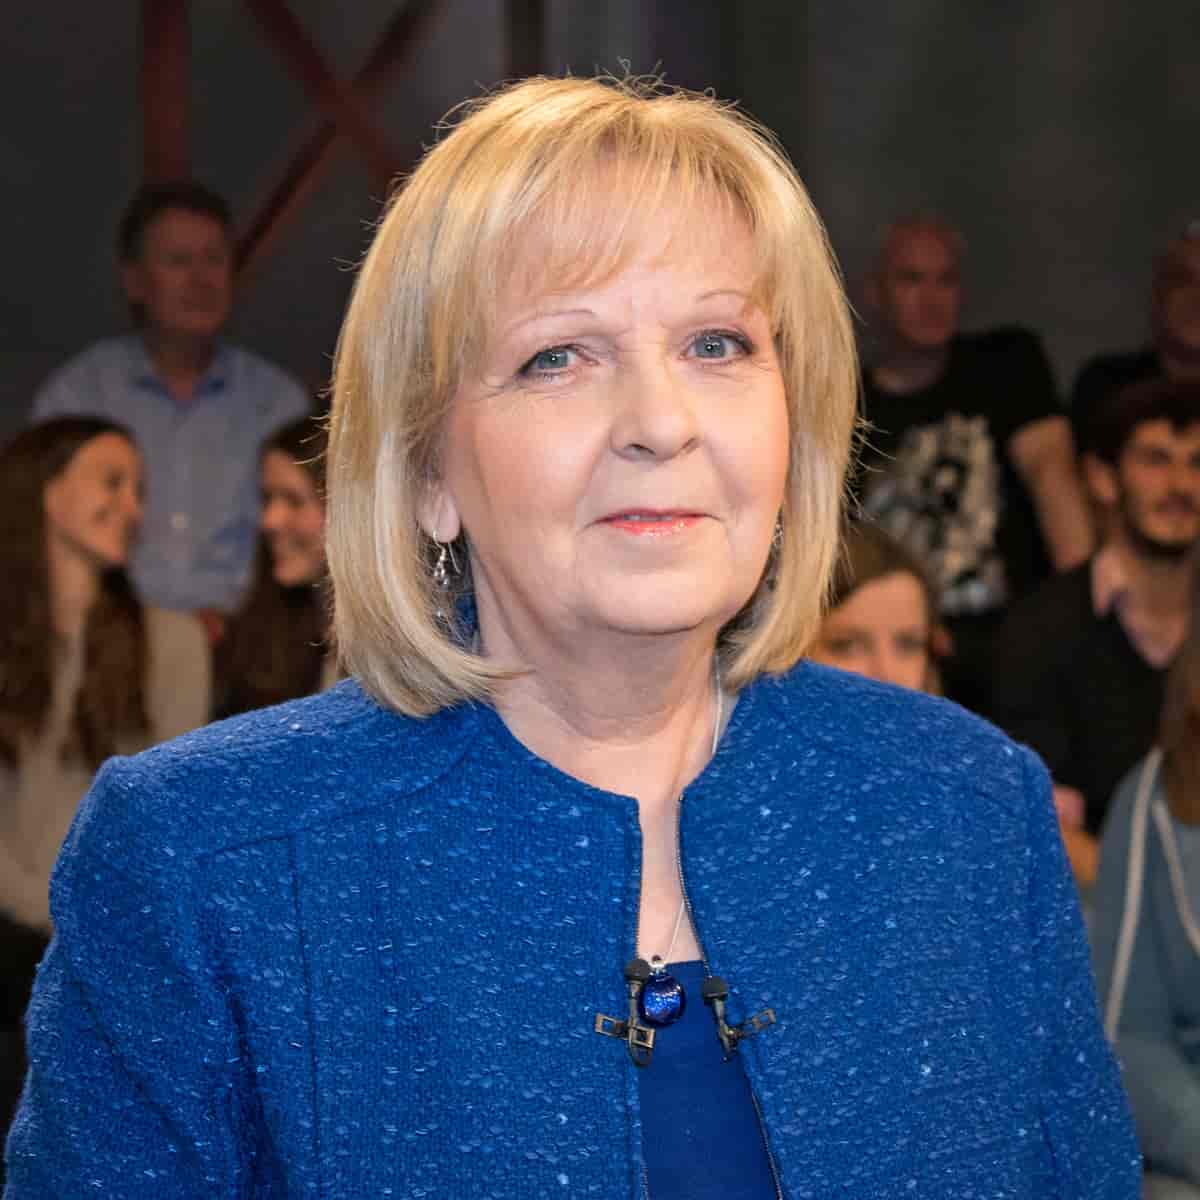 Hannelore Kraft